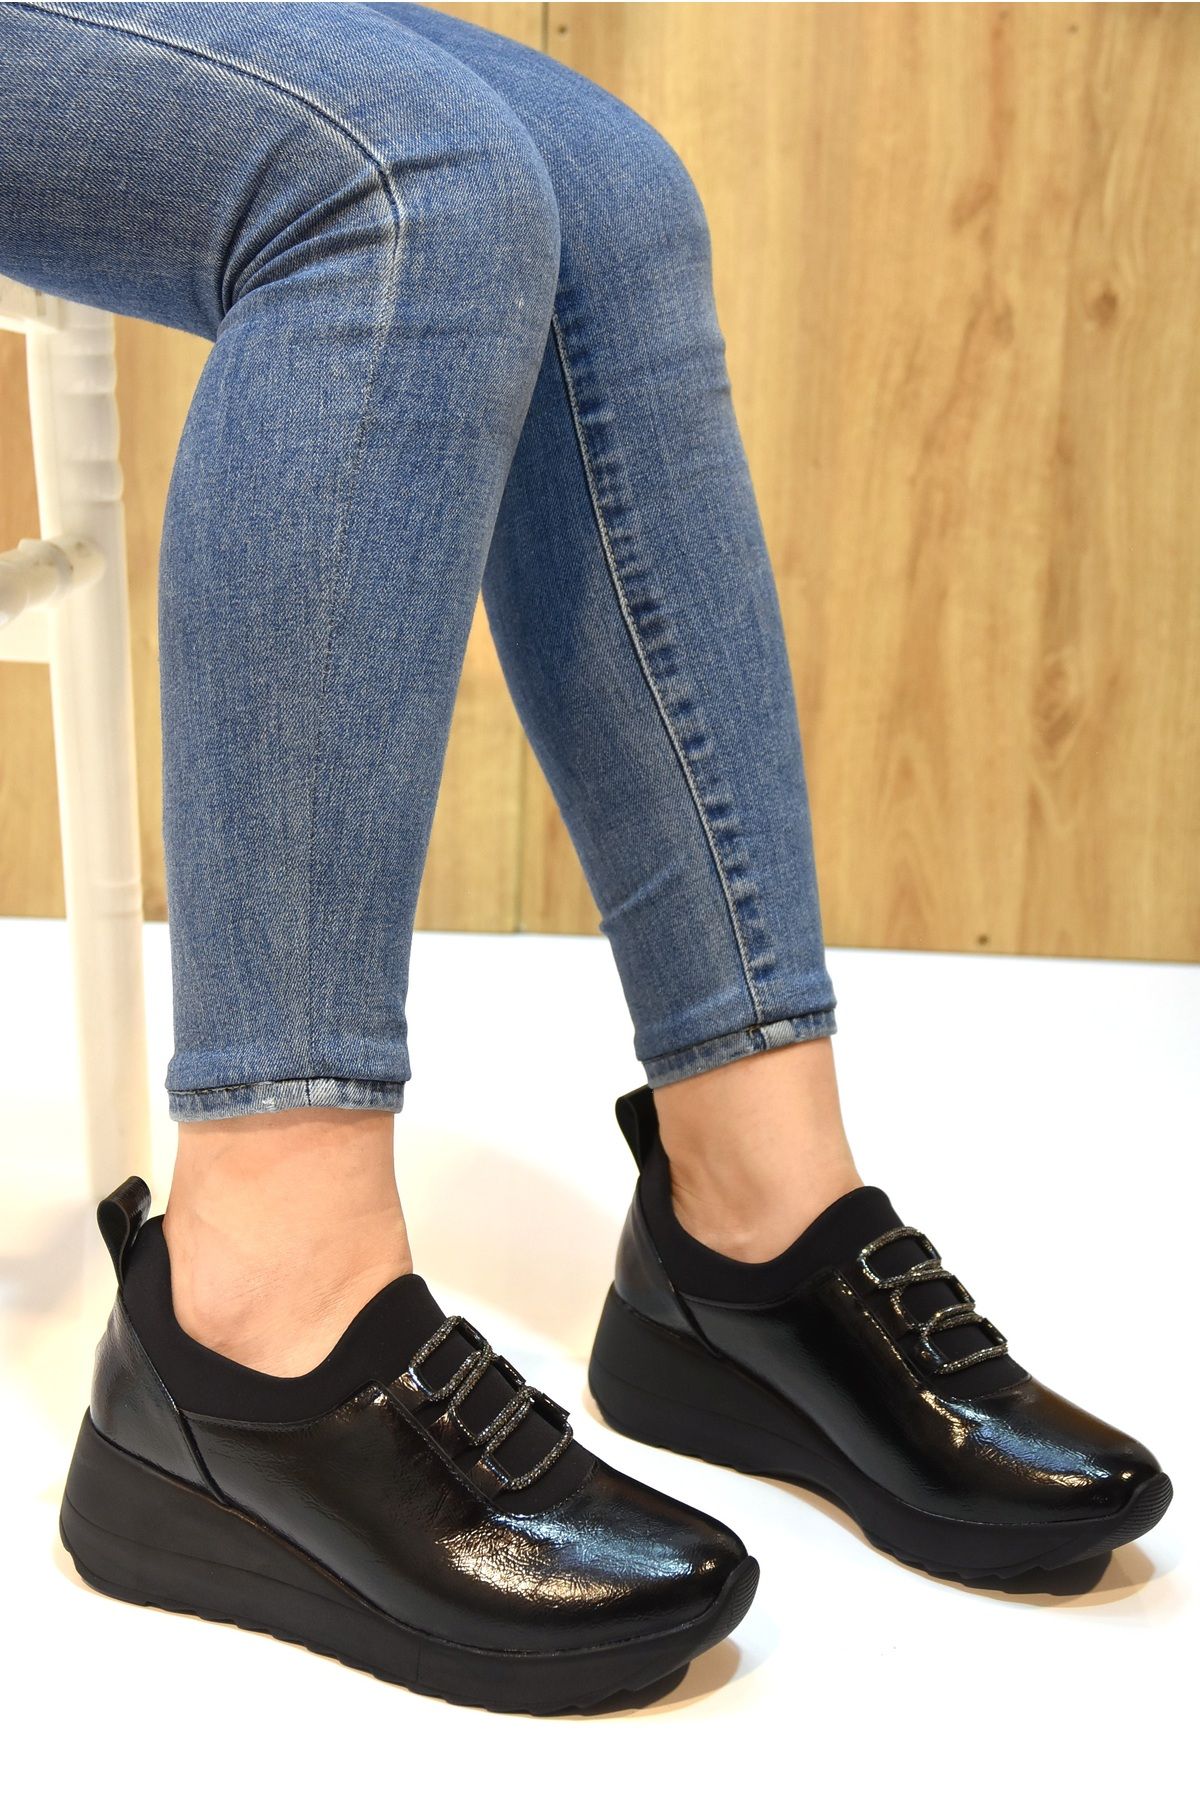 Prego (izlife) Poli Hafif Taban Taş Biye Detaylı Günlük Kadın Ayakkabı Siyah